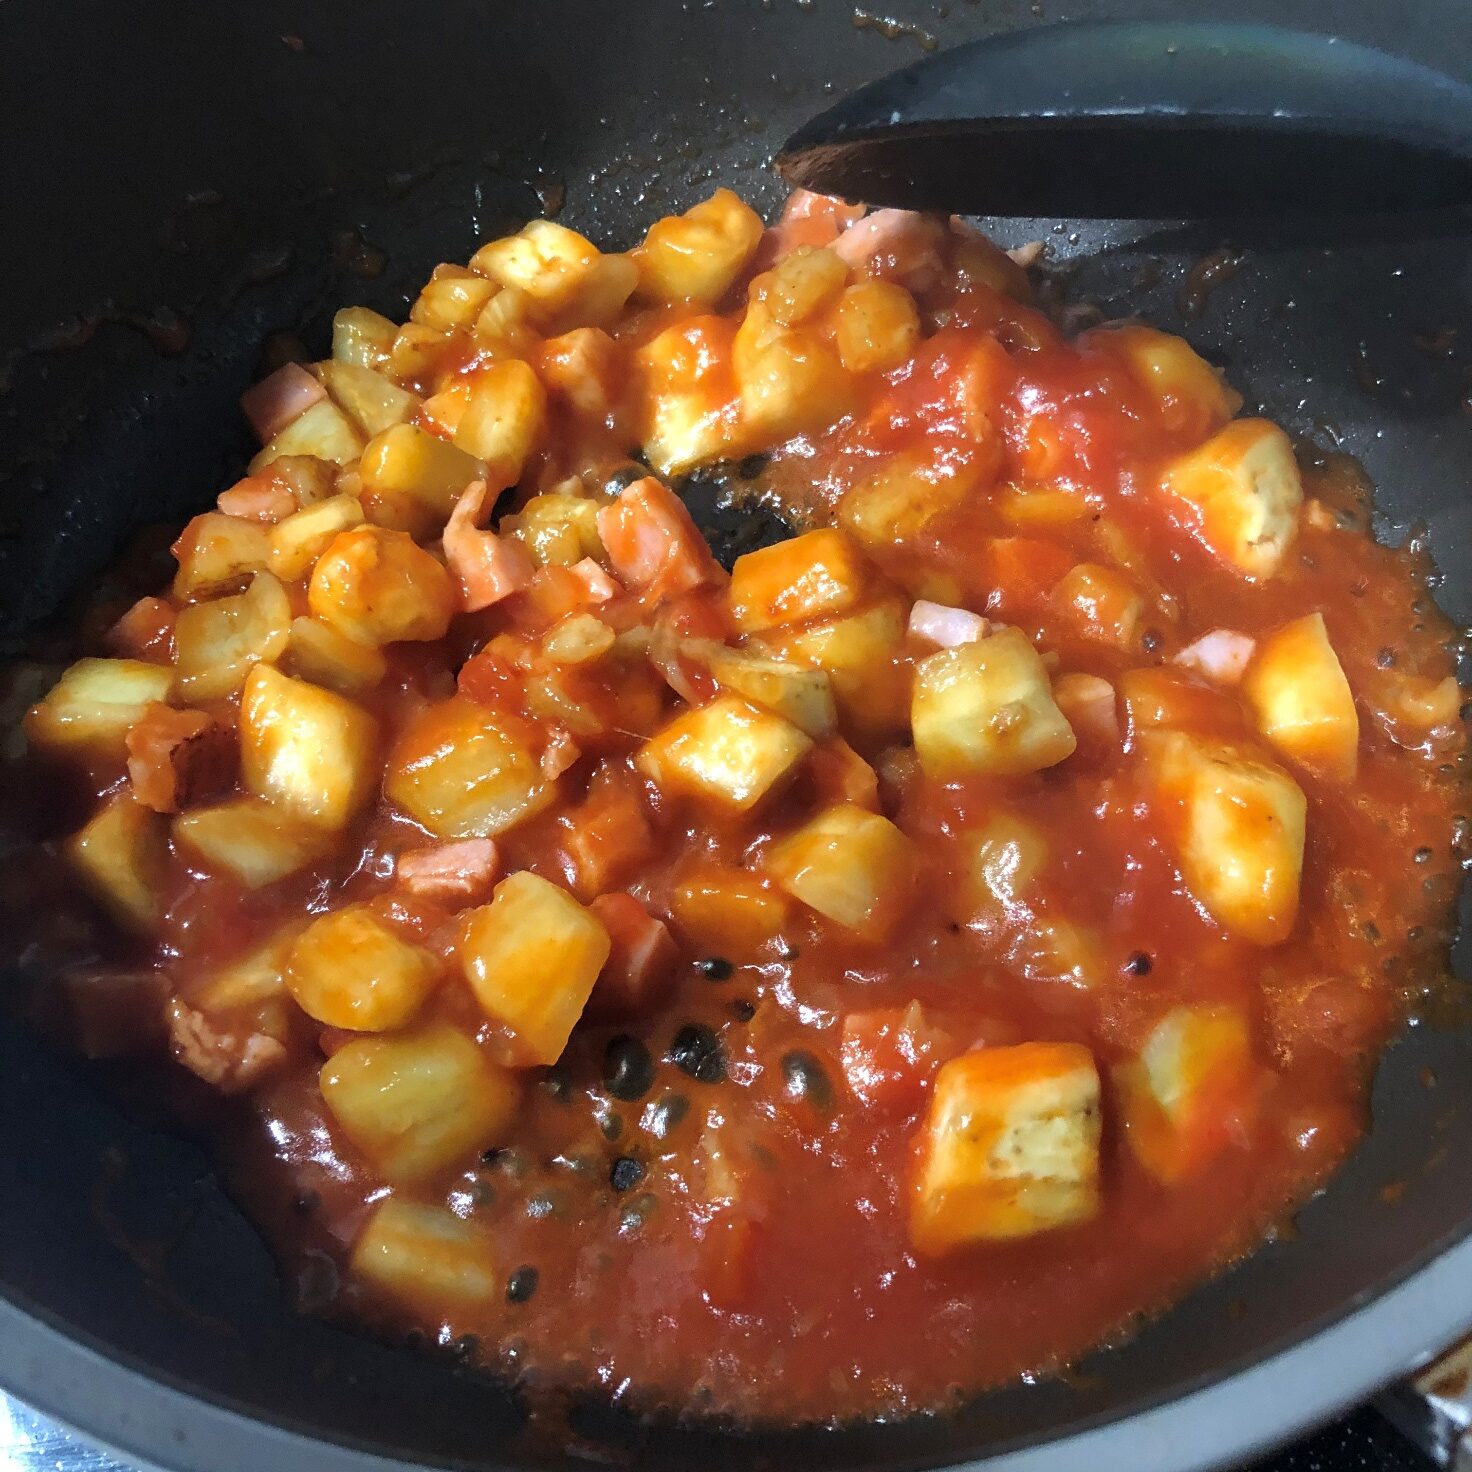 炒めた米茄子とベーコンに業務スーパーの完熟トマトソースを加える